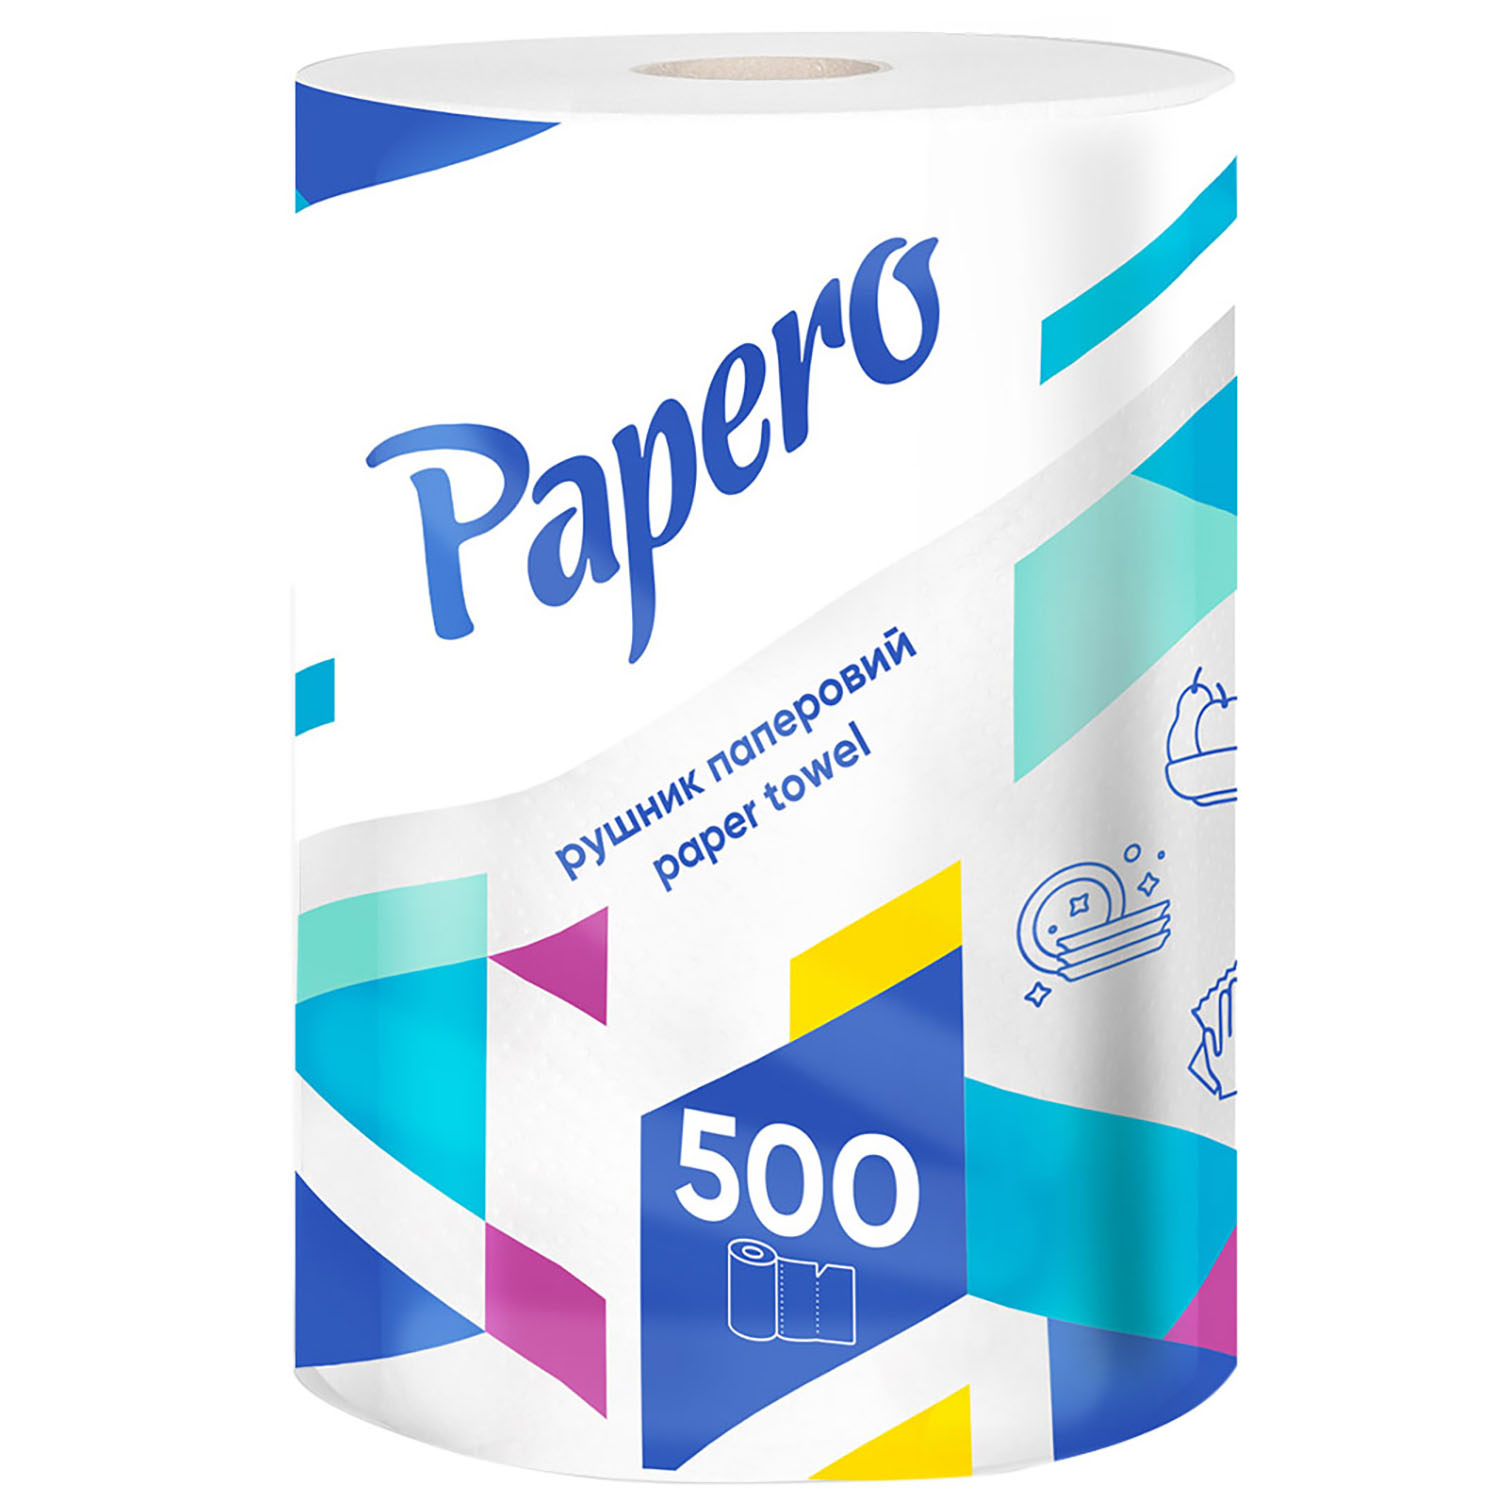 Полотенца бумажные Papero Джамбо 2 слойные 500 листов 62.5 м - фото 1